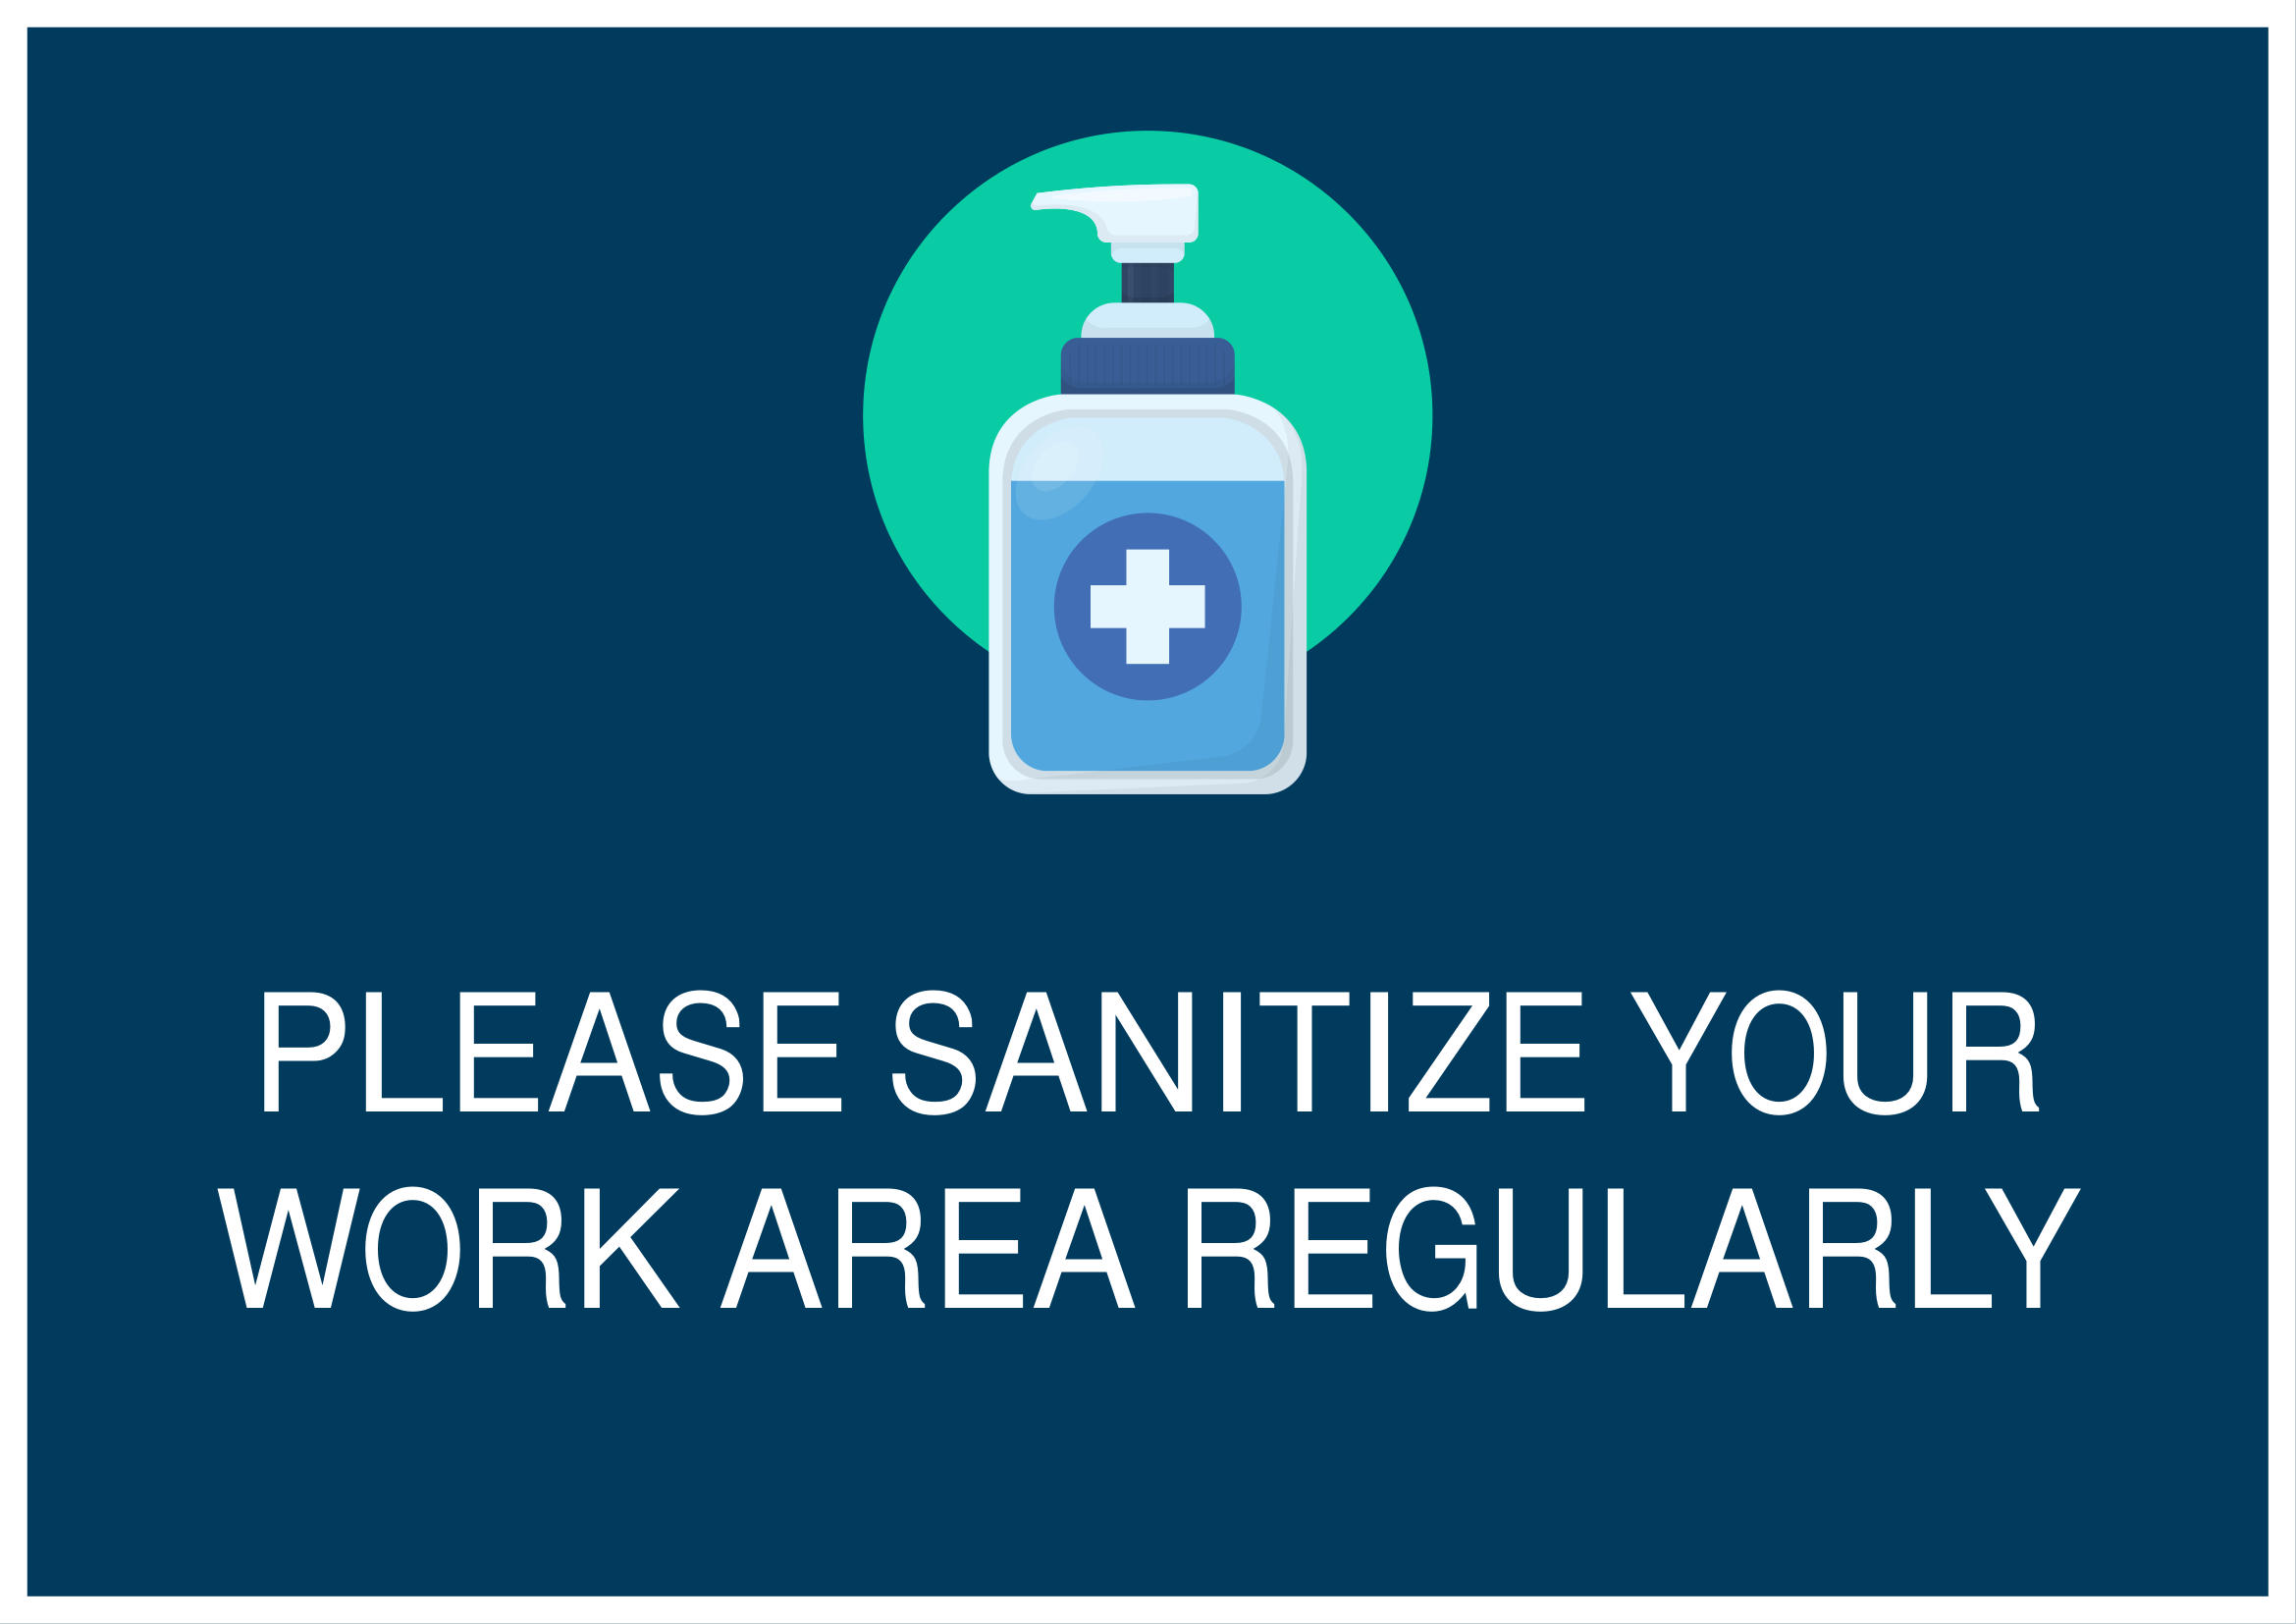 SHTK-Signage - Workplace Sanitation